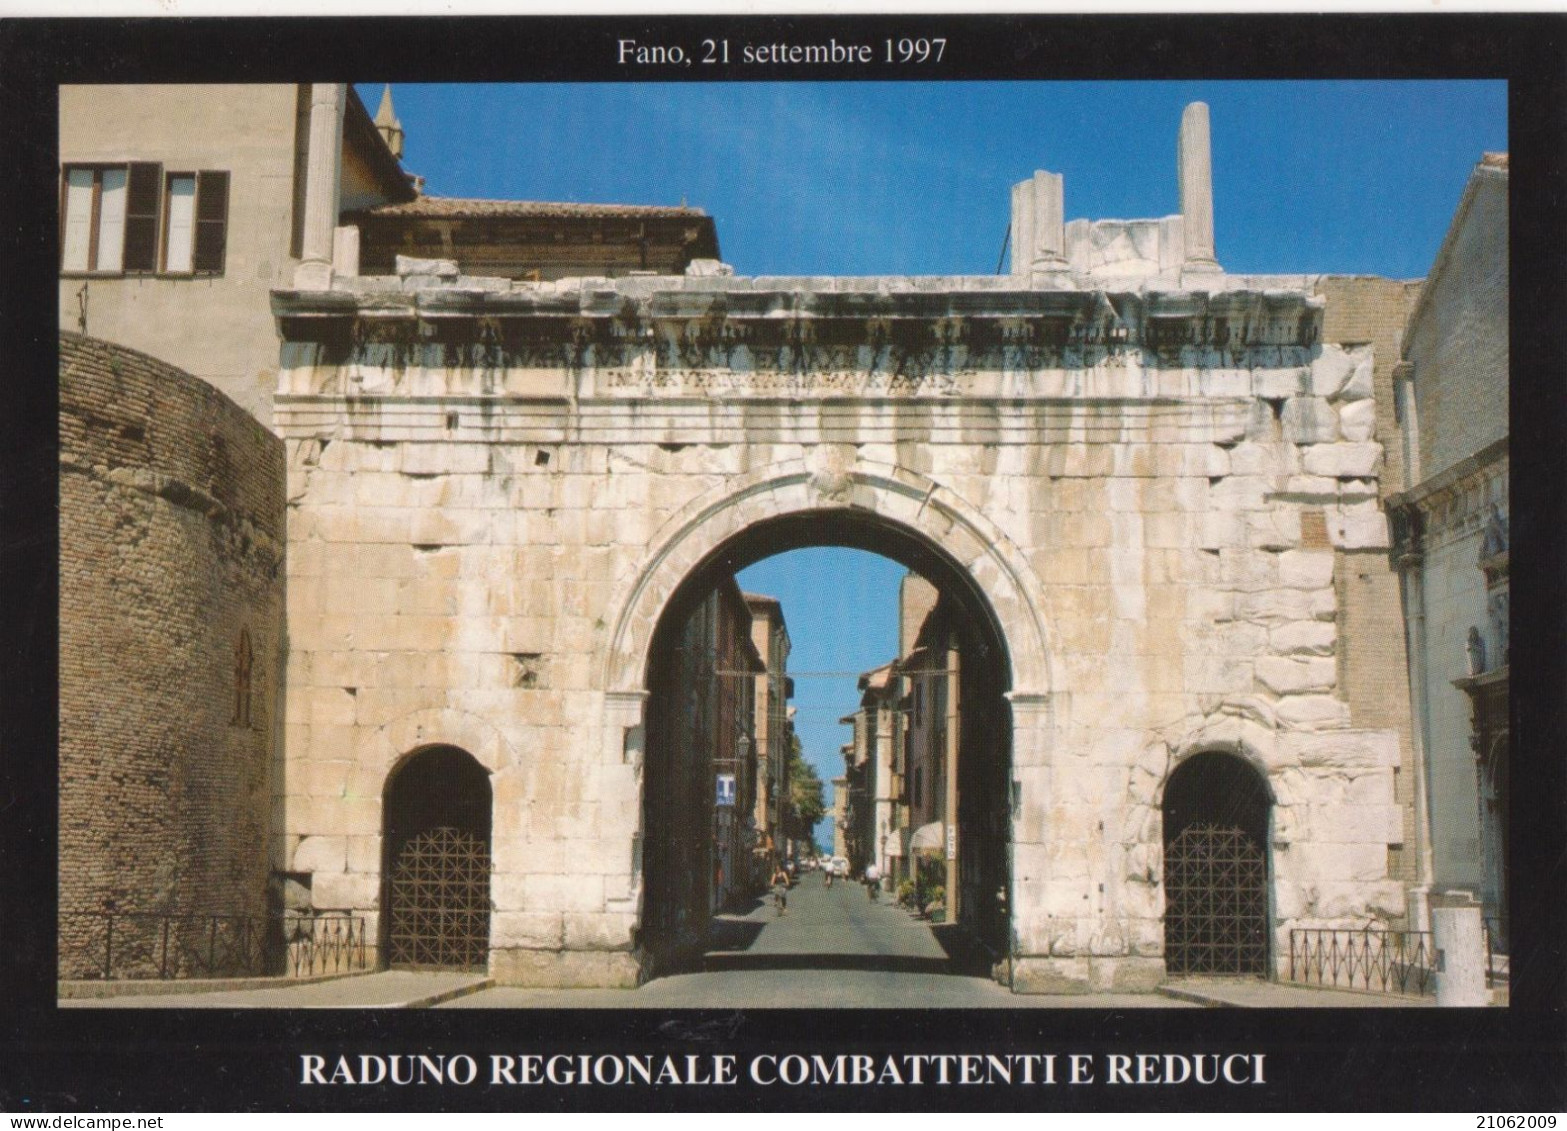 FANO - ARCO DI AUGUSTO - RADUNO REGIONALE COMBATTENTI E REDUCI 21.09.1997 - INSEGNA "SALI E TABACCHI" - NV - Fano